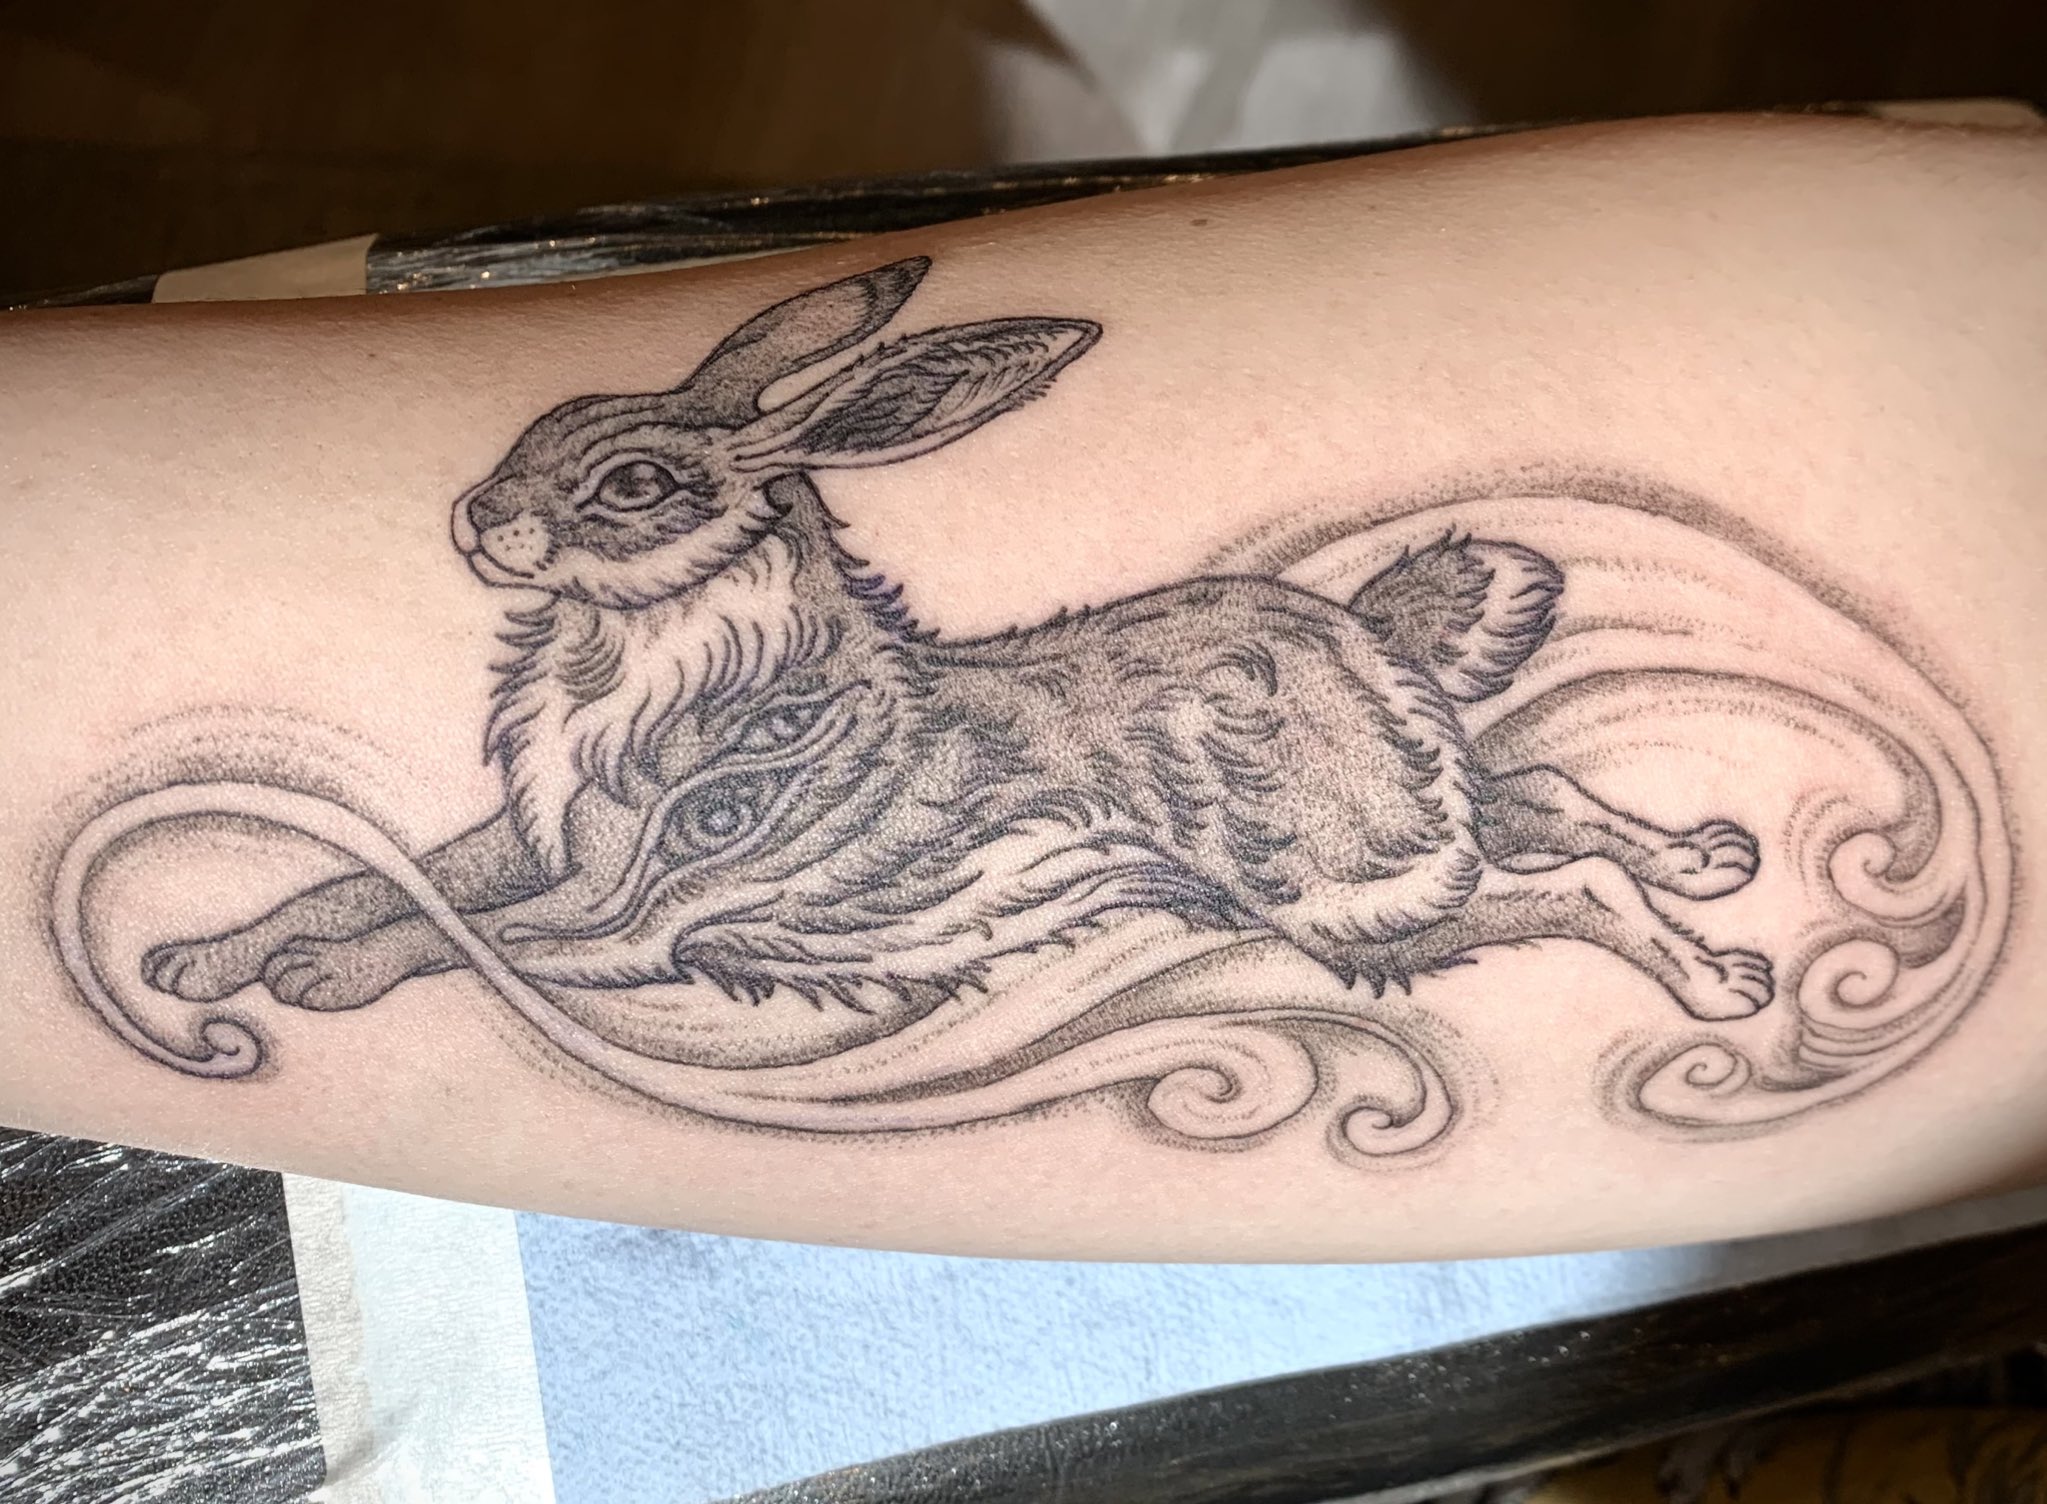 Rabbit tattoo world record broken - Kiwi Kids News